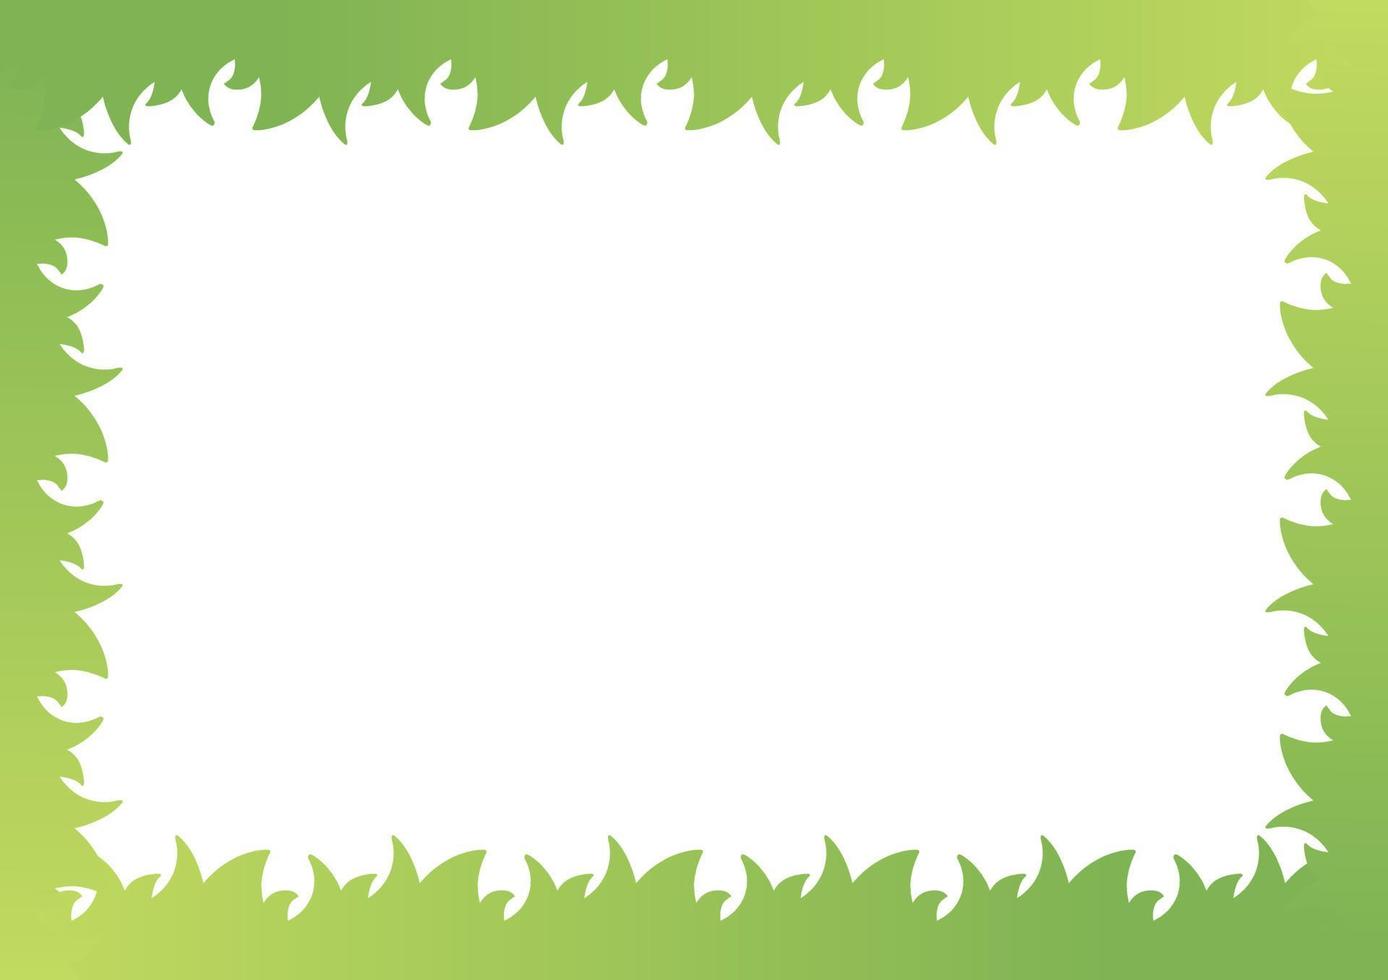 sfondo di erba verde su sfondo bianco con gradazione di colore vettore